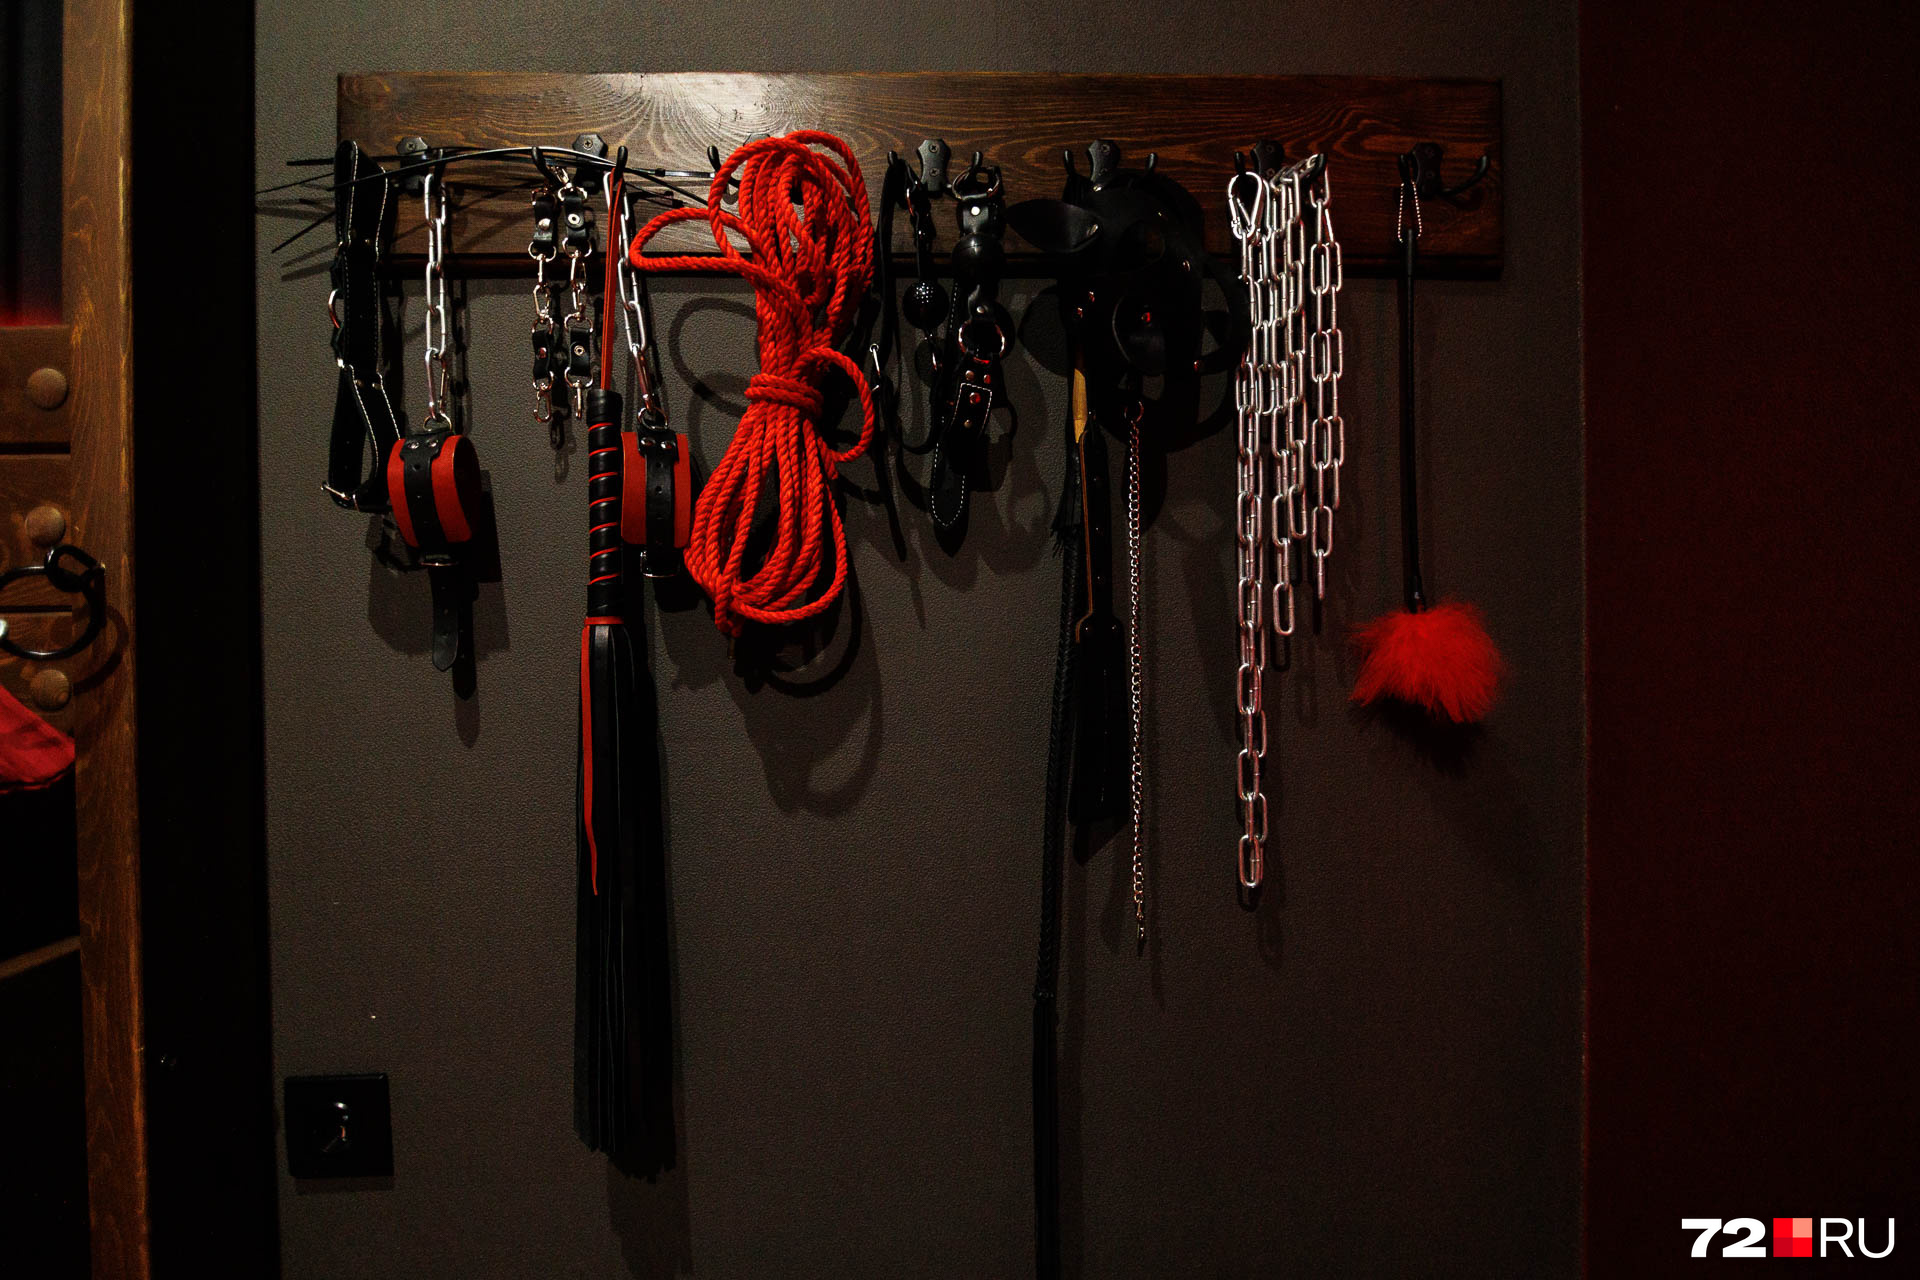 Из сексуальных атрибутов здесь есть наручники, кляпы, веревки, цепи, кисточки и плети. Все предметы, говорят владельцы, обрабатываются после каждого гостя — гигиена соблюдается